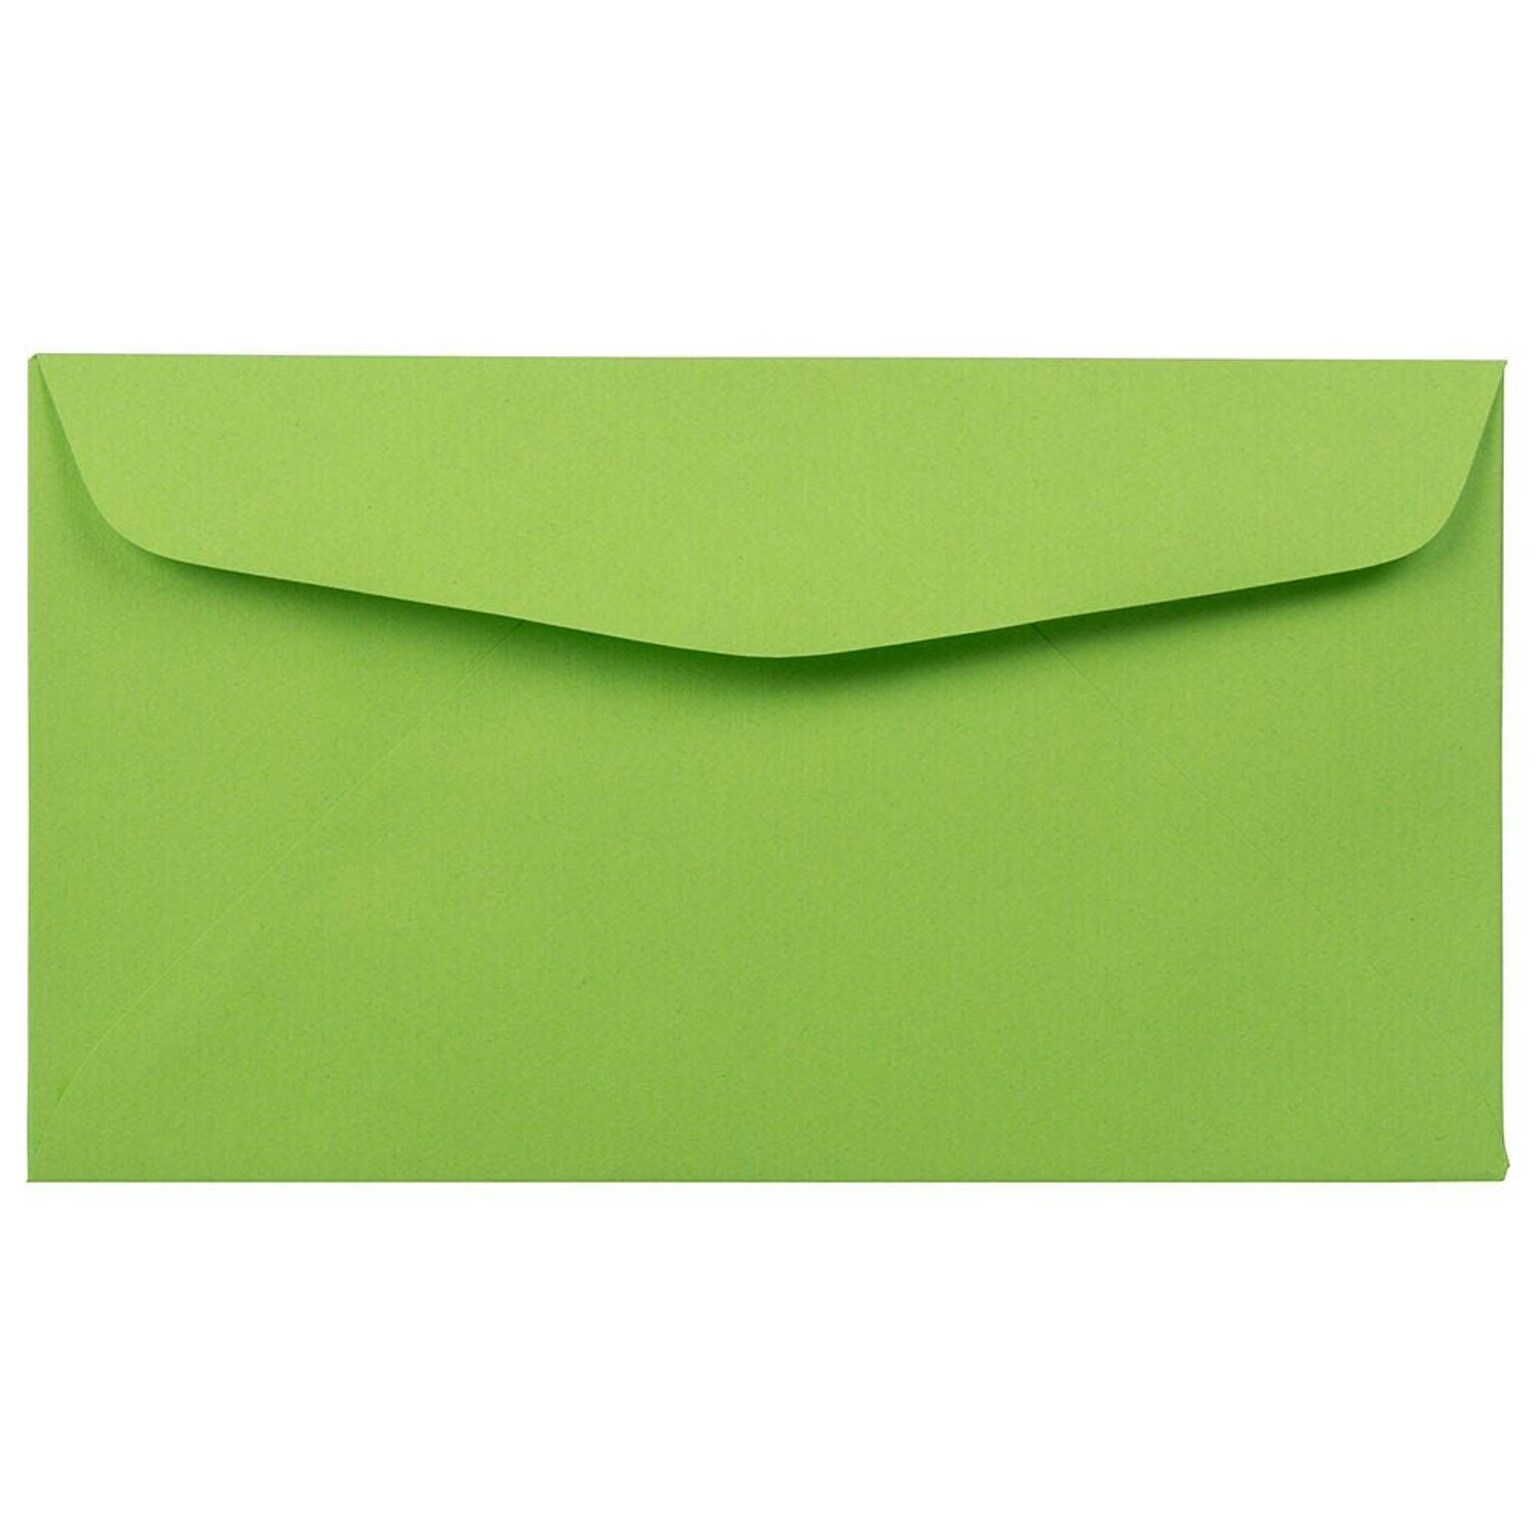 JAM Paper #6 3/4 Business Envelope, 3 5/8 x 6 1/2, Citrus Lime, 100/Pack (1536466D)